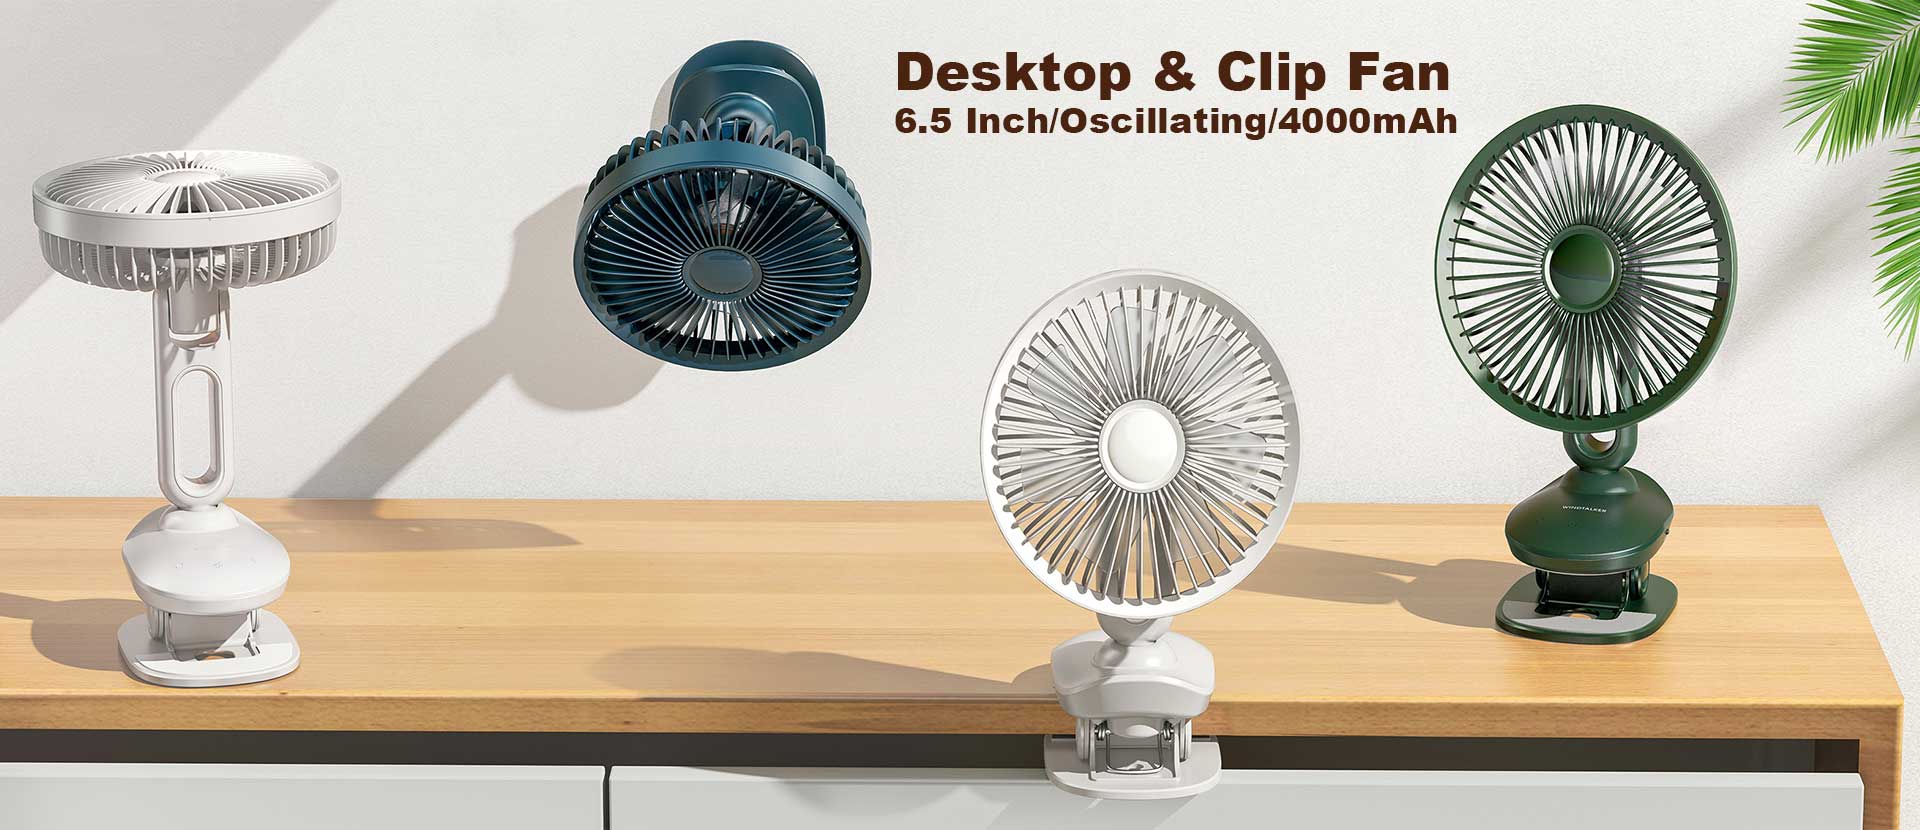 6.5 inch Desktop clip fan oscillating fan chargeable battery